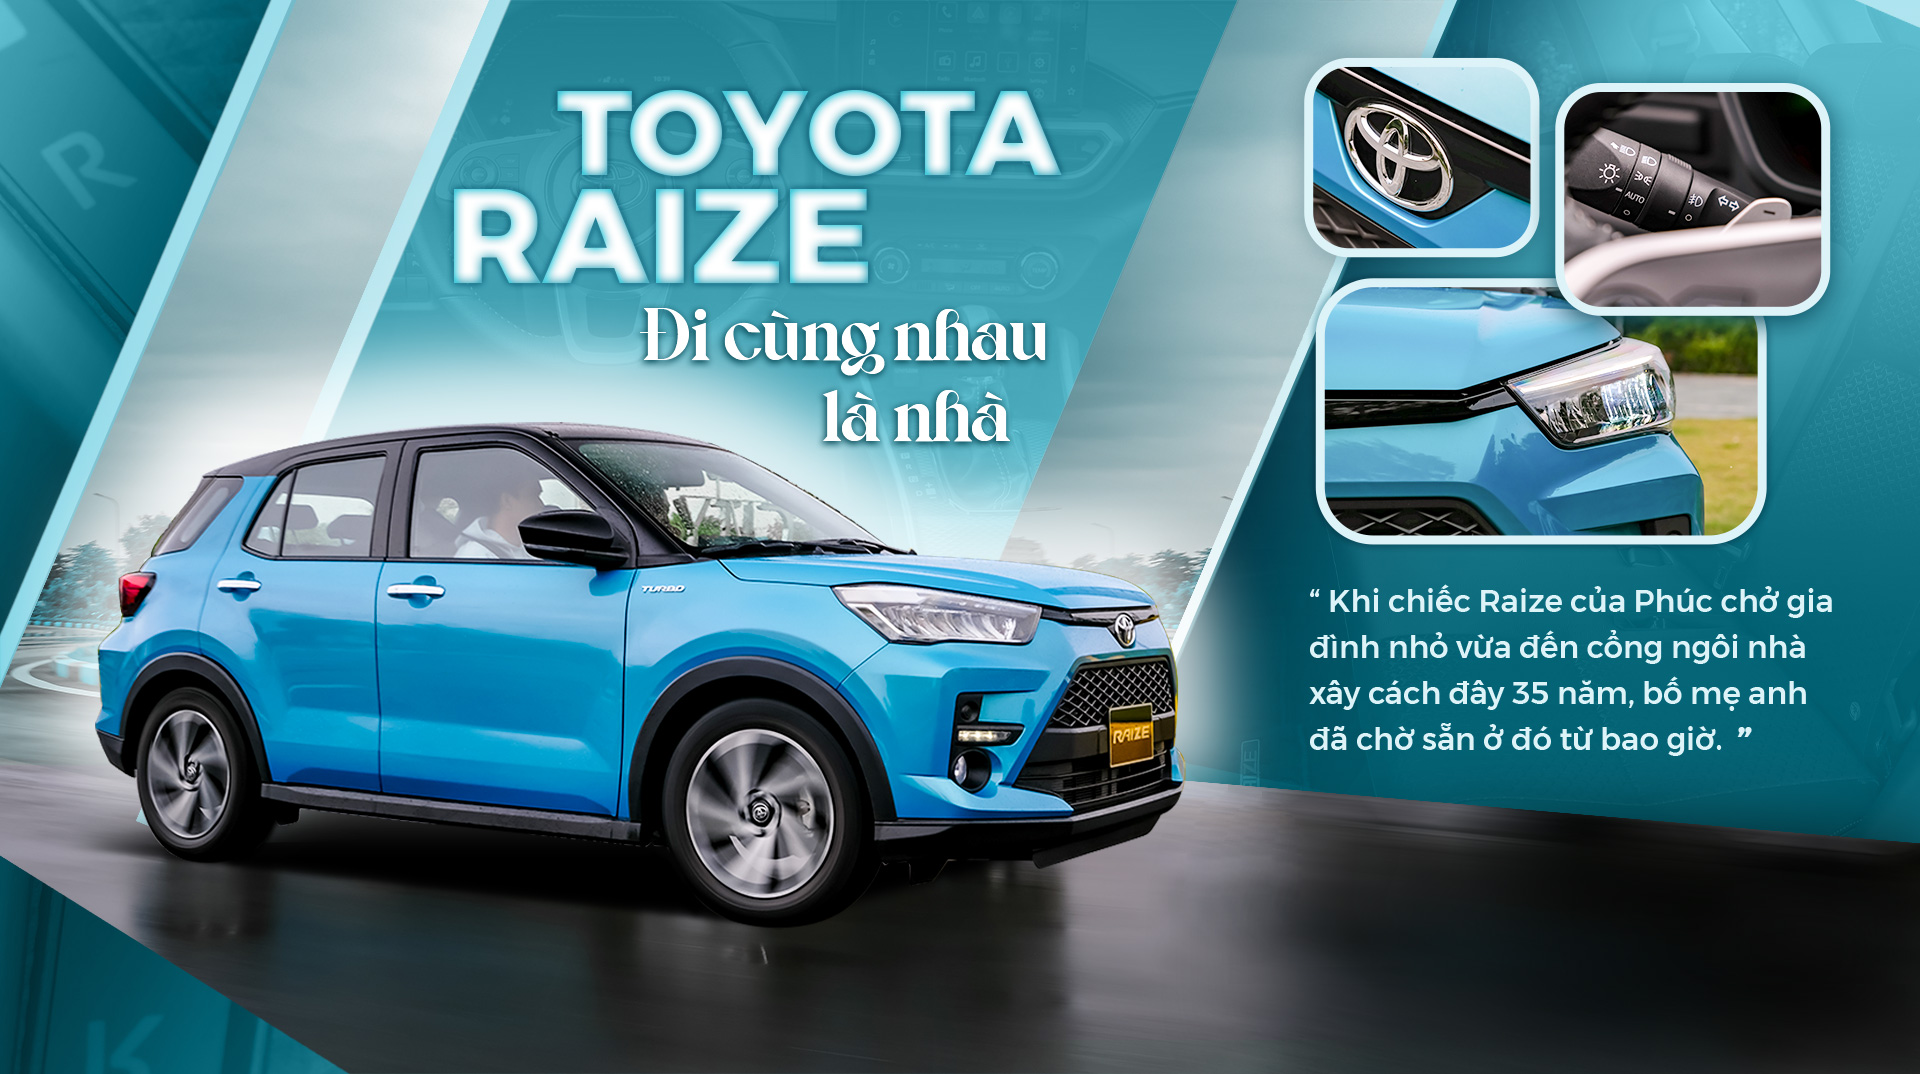 Toyota Raize – đi cùng nhau là nhà - 1